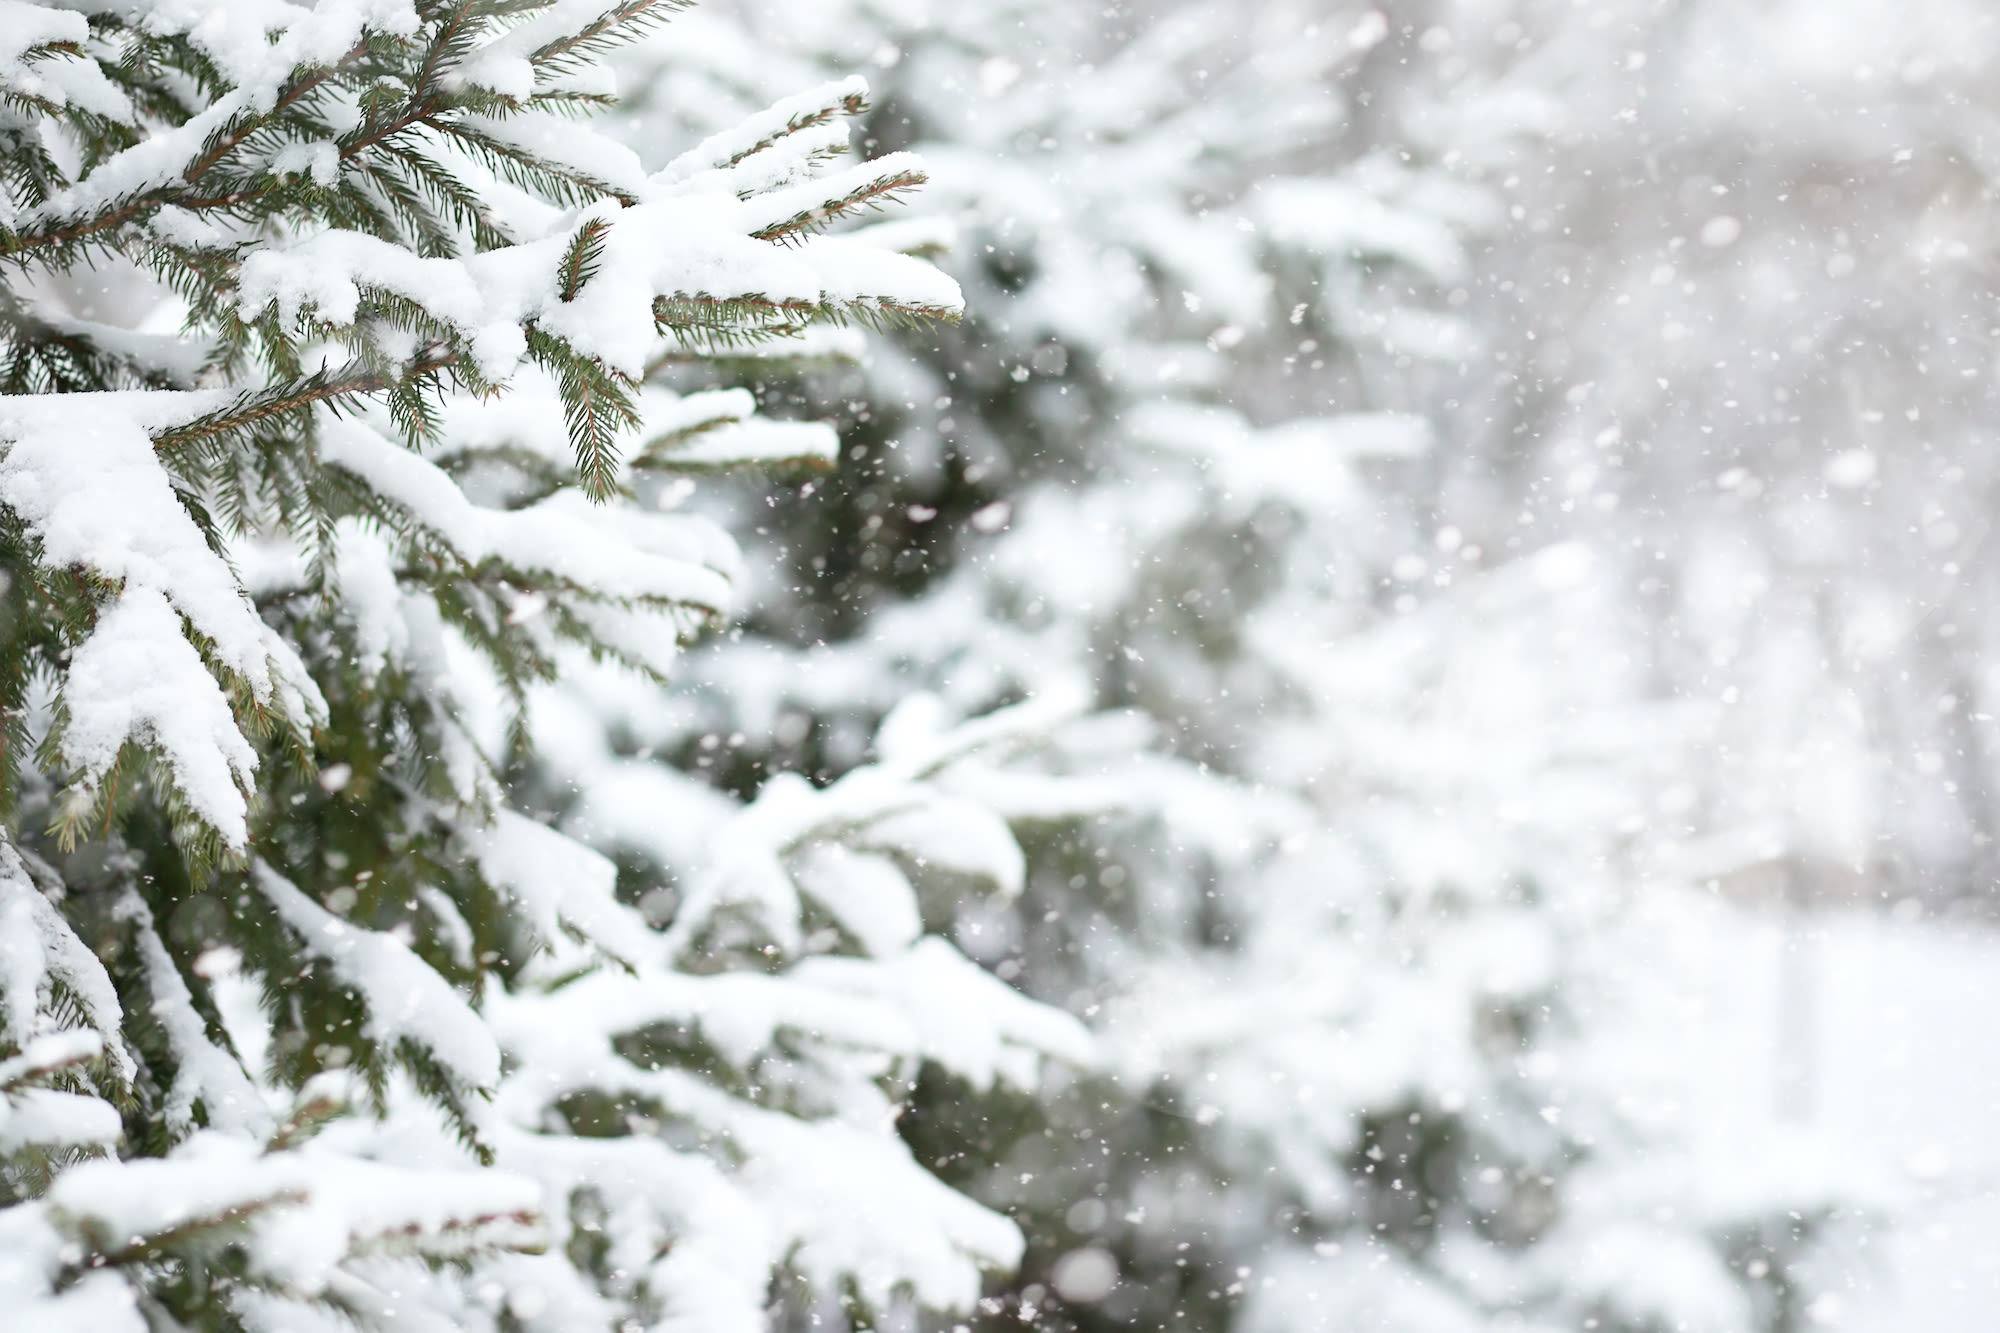 Sneeuw op takken van kerstboom. Foto: AdobeStock / alexkich